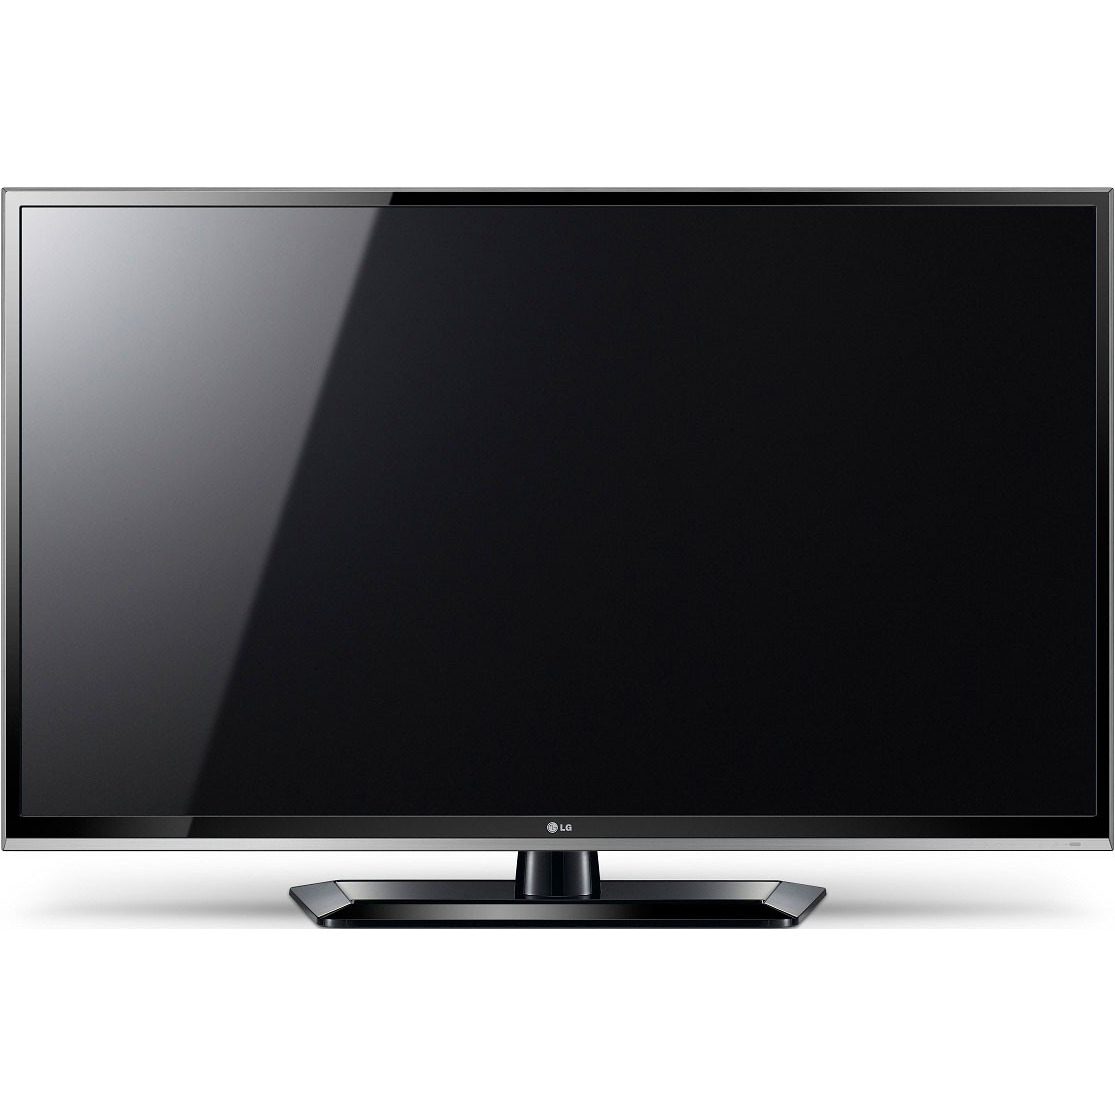 Вес телевизора lg. LG 50pt353. Aiwa 19le6010. Телевизор LG 42ls570s. Toshiba 40hl933rk.